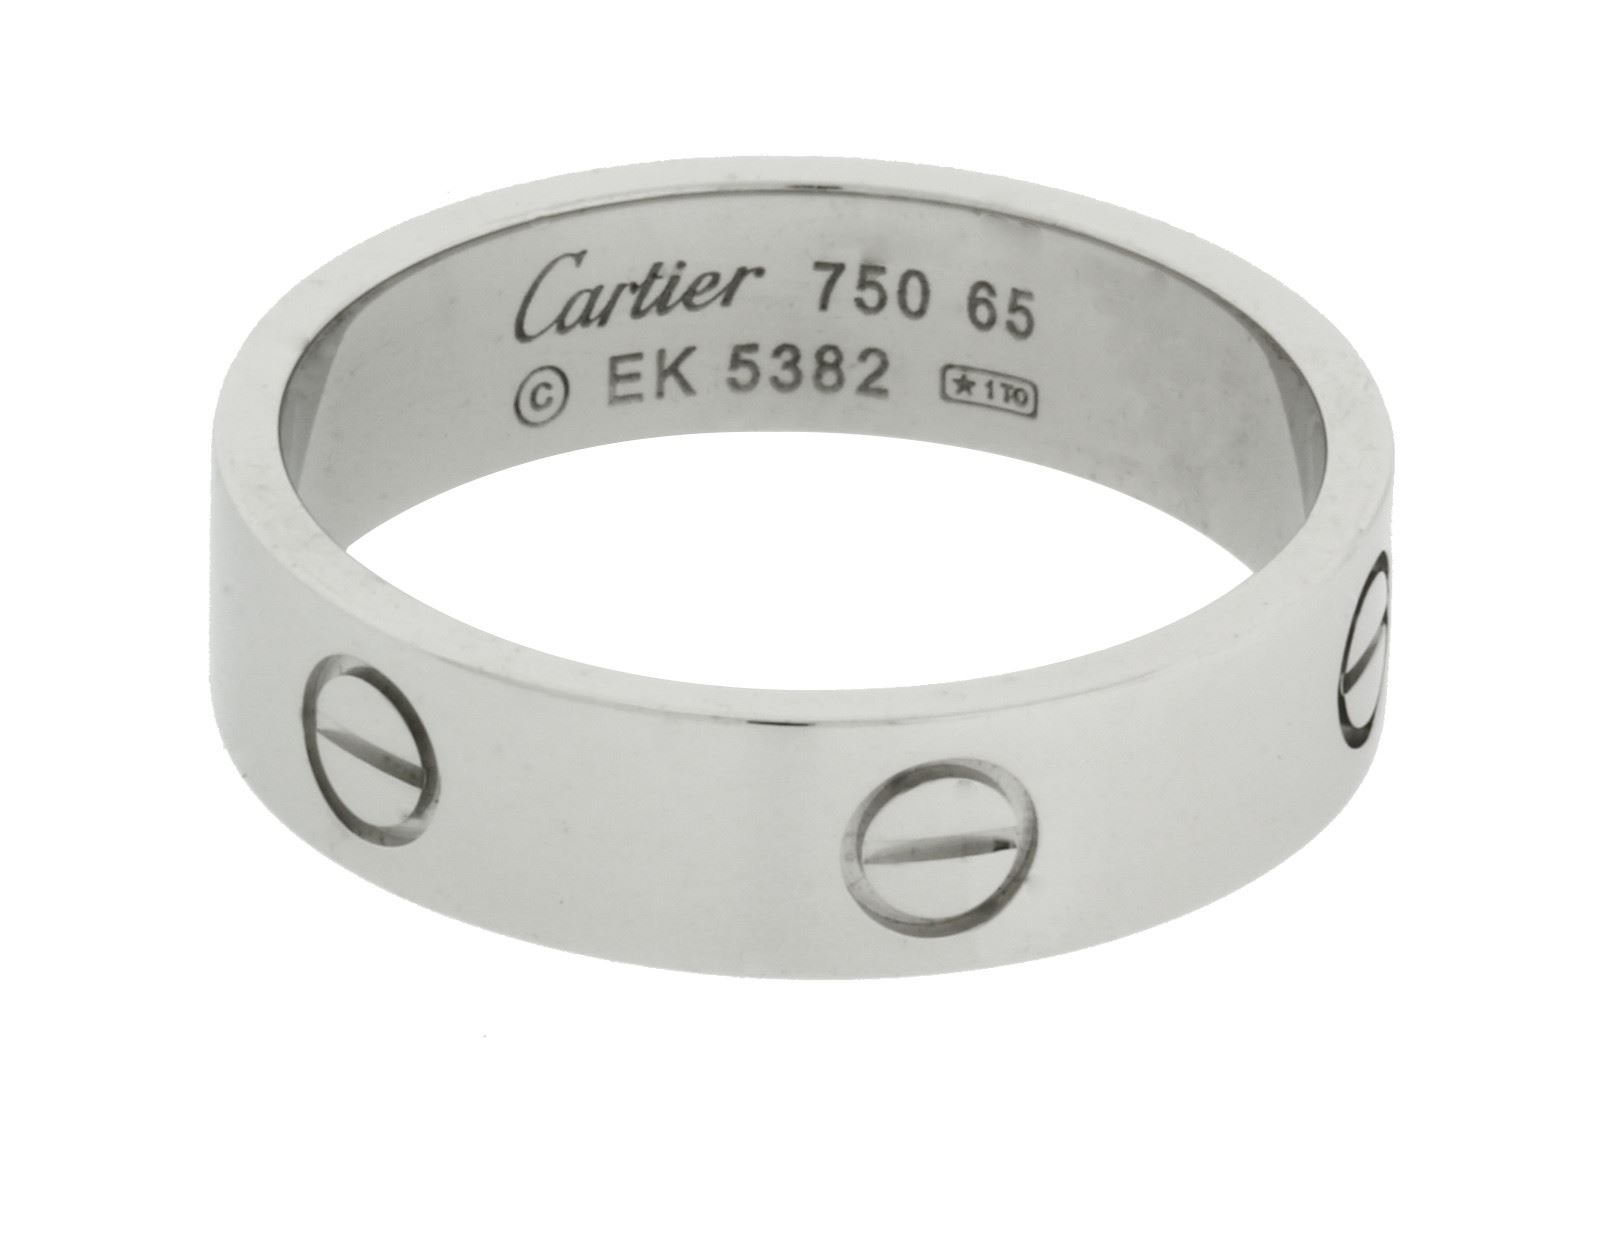 cartier love ring price uk